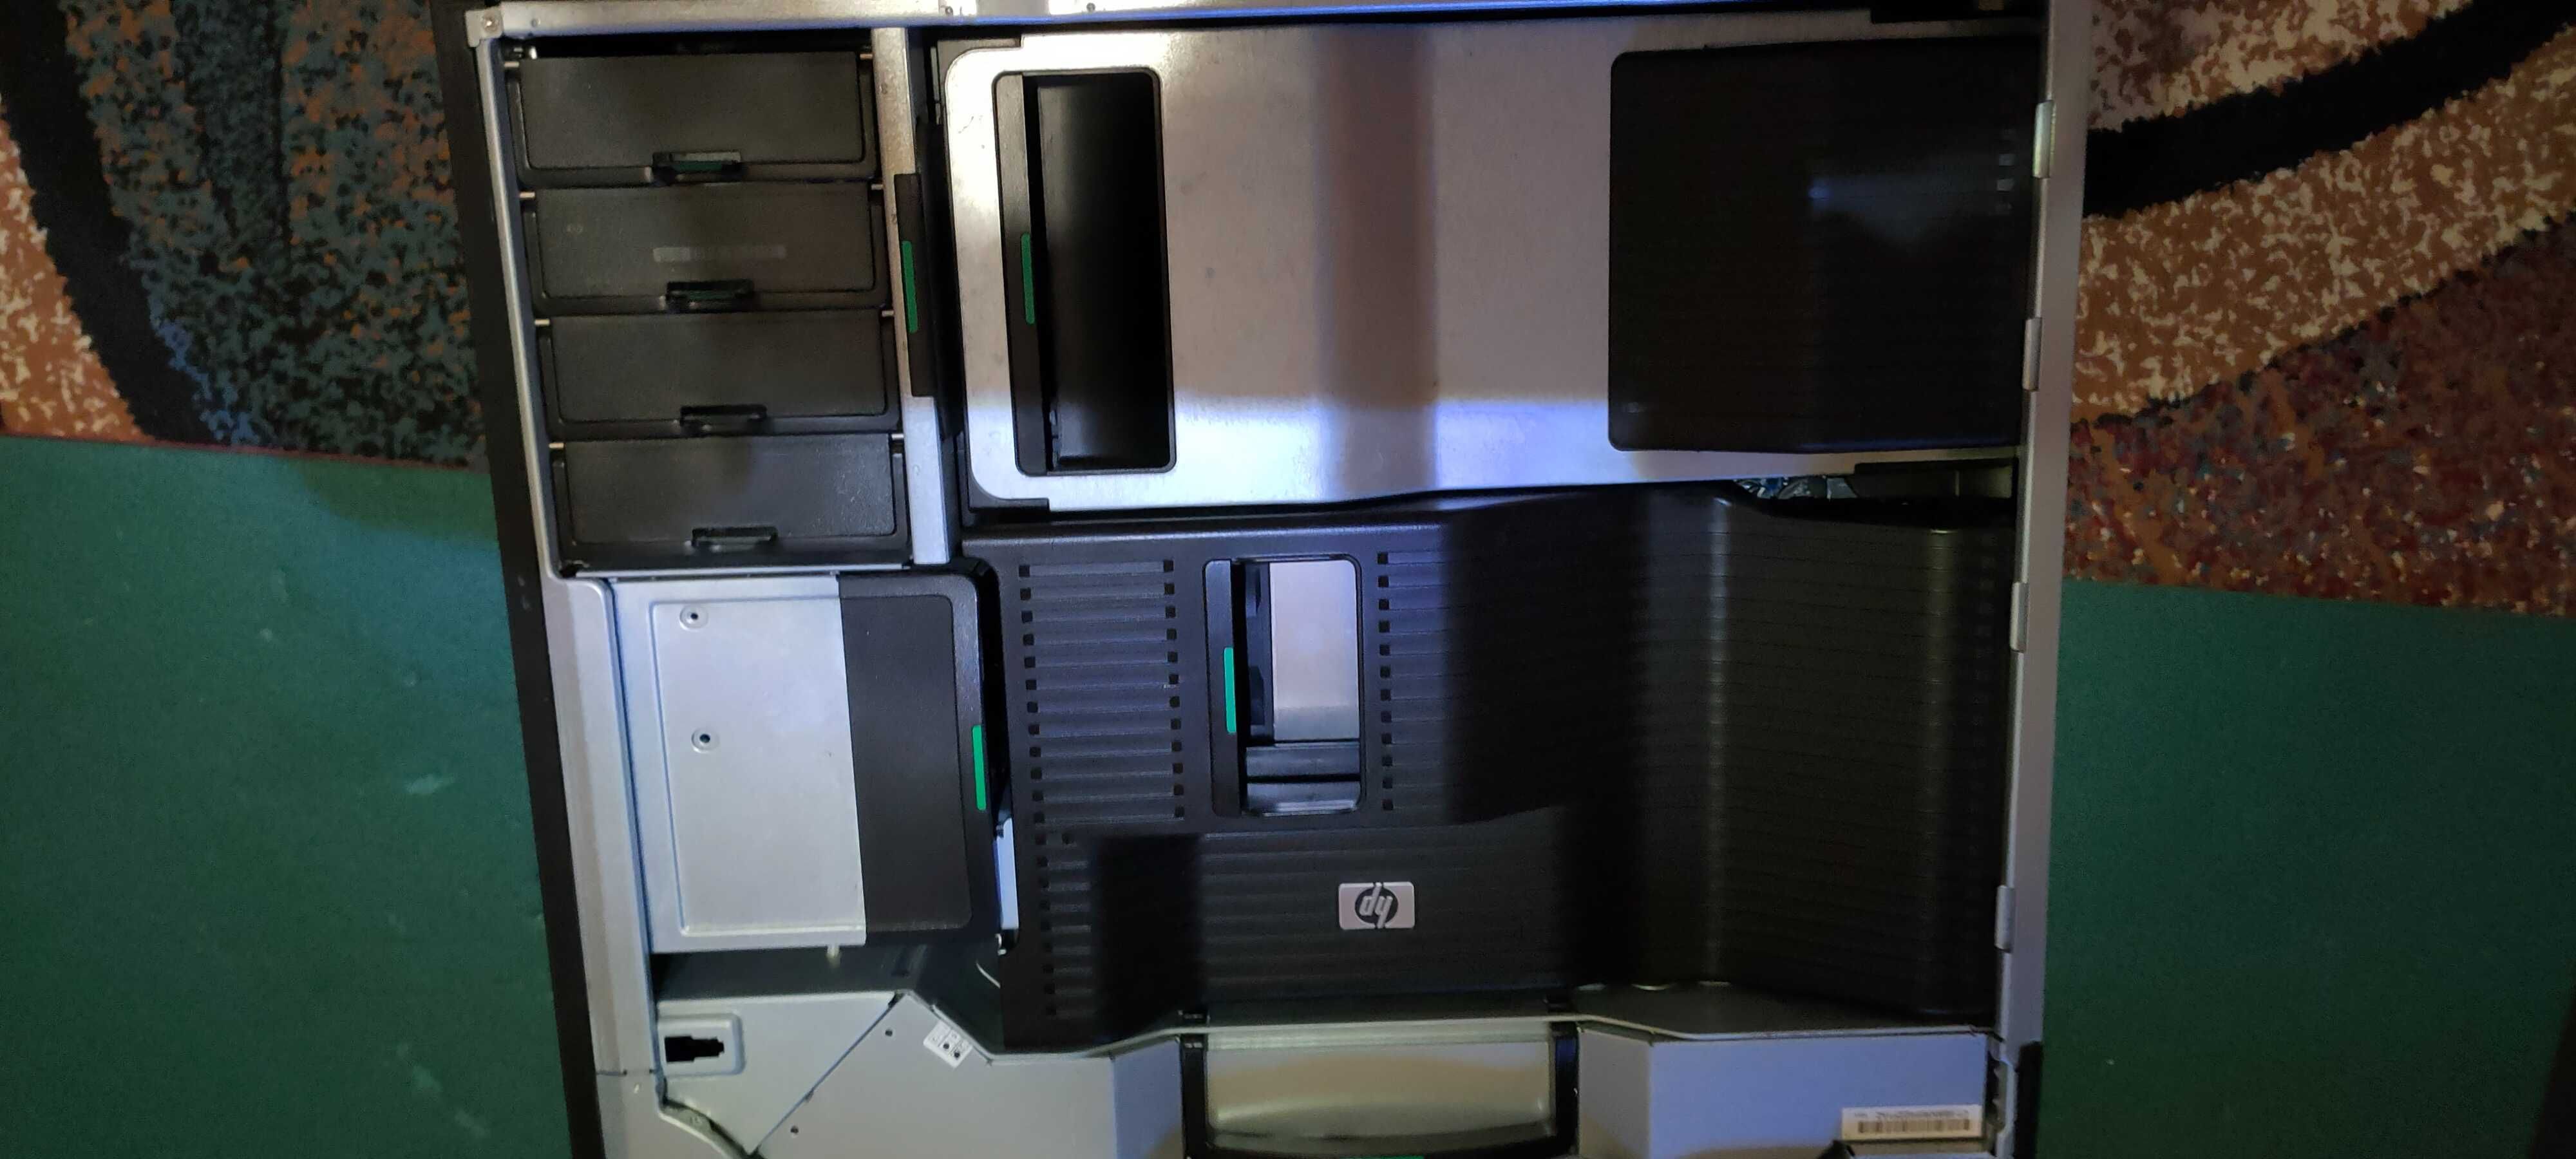 Workstation HP Z800, 2xCPU XEON X5675, Quadro 2000, RAM 64 GB, SSD 120